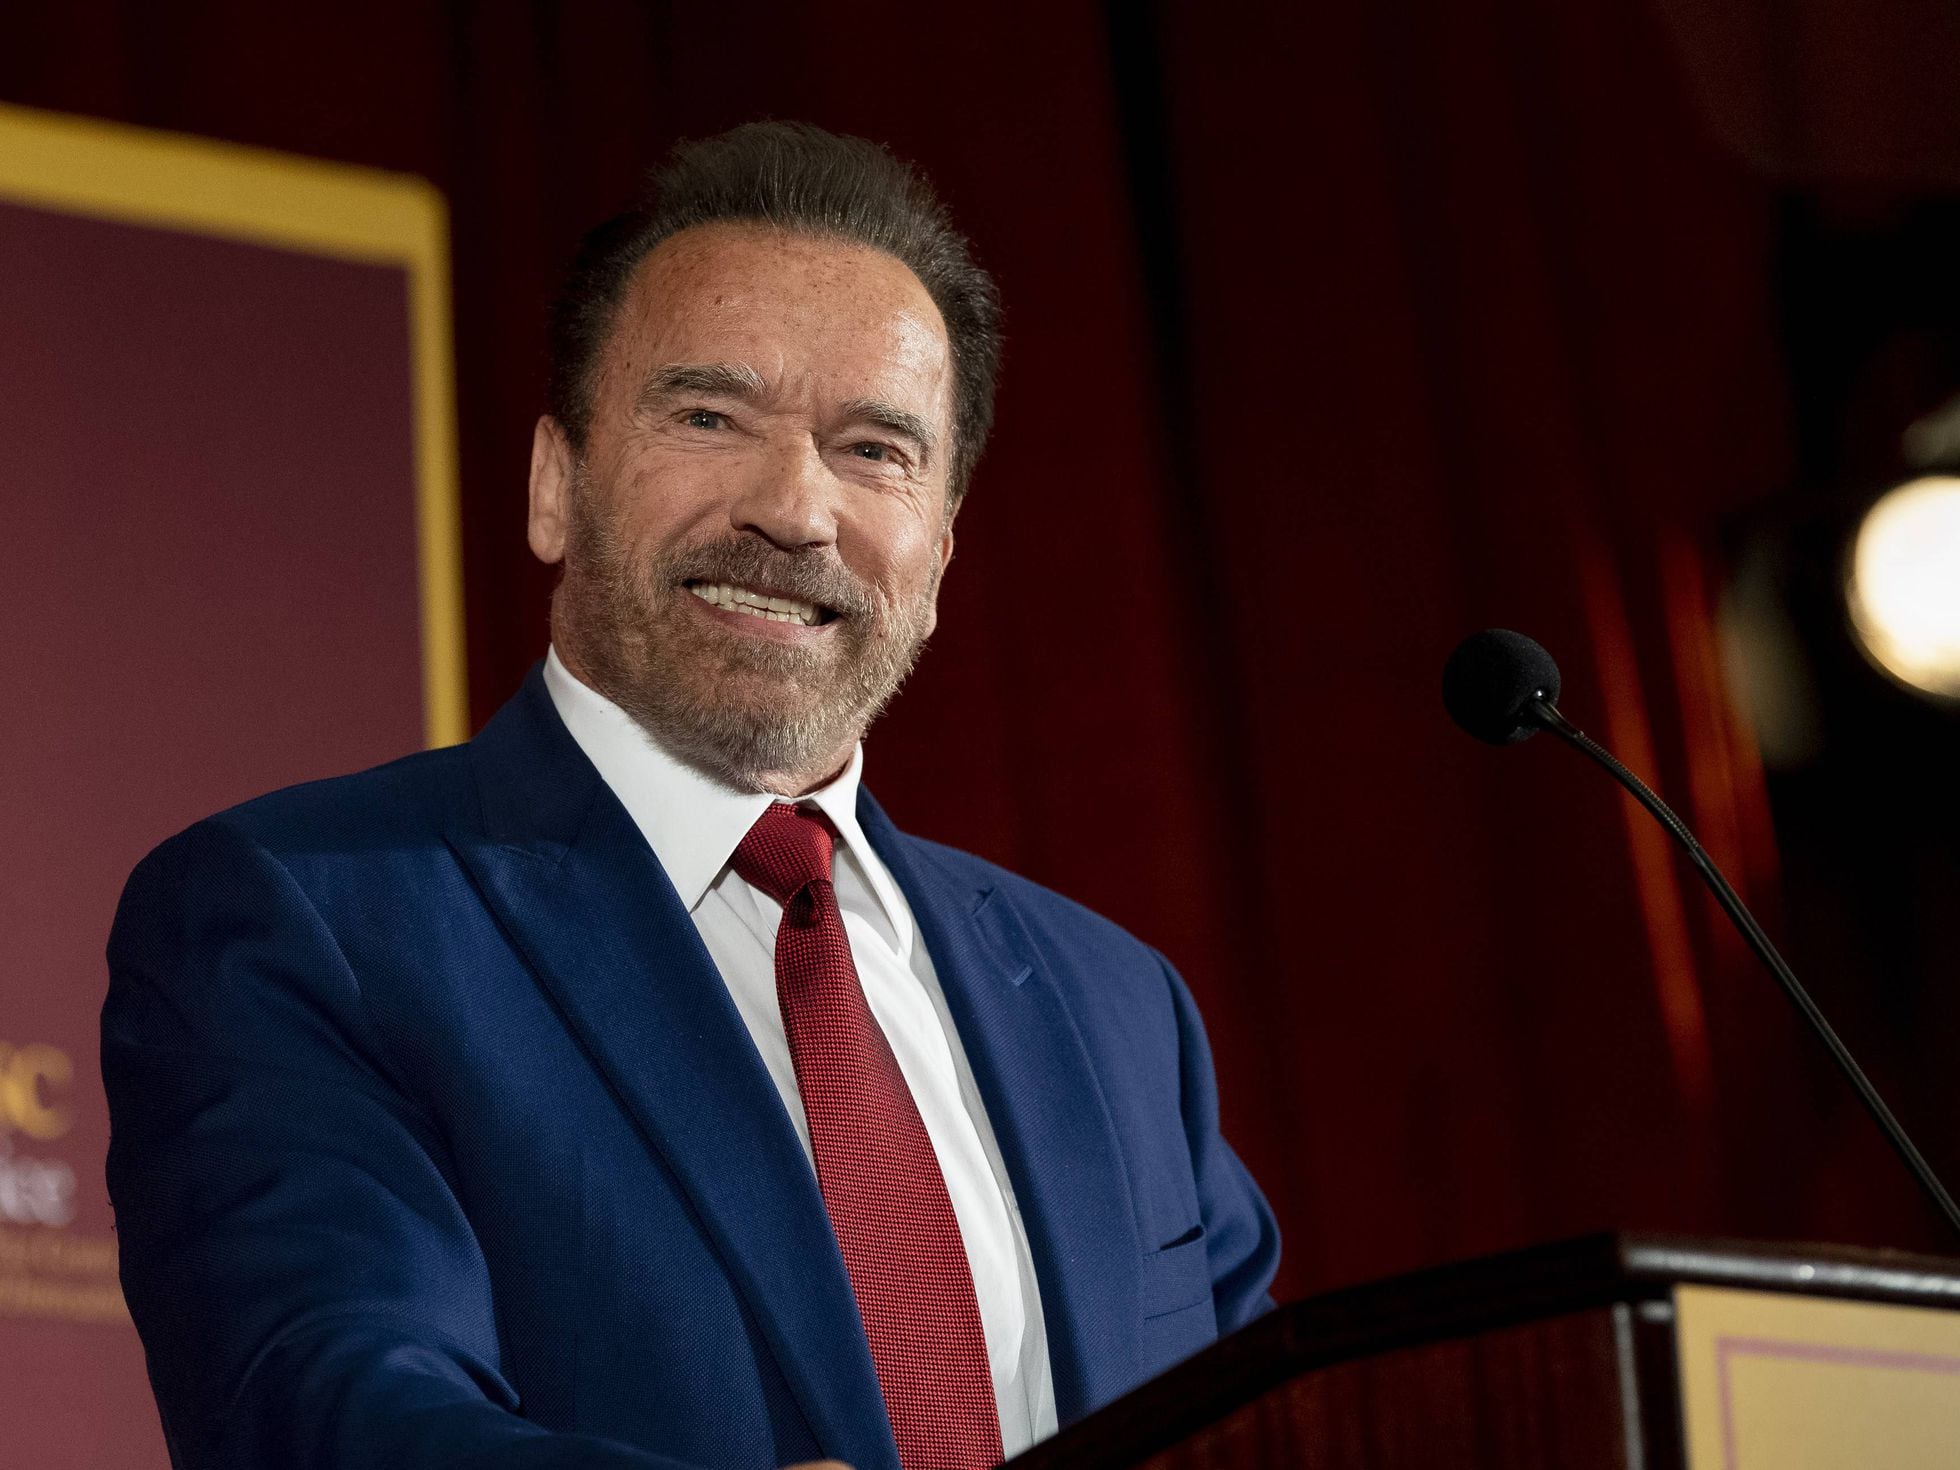 Arnold Schwarzenegger pudo morir en una operación: Lo siento